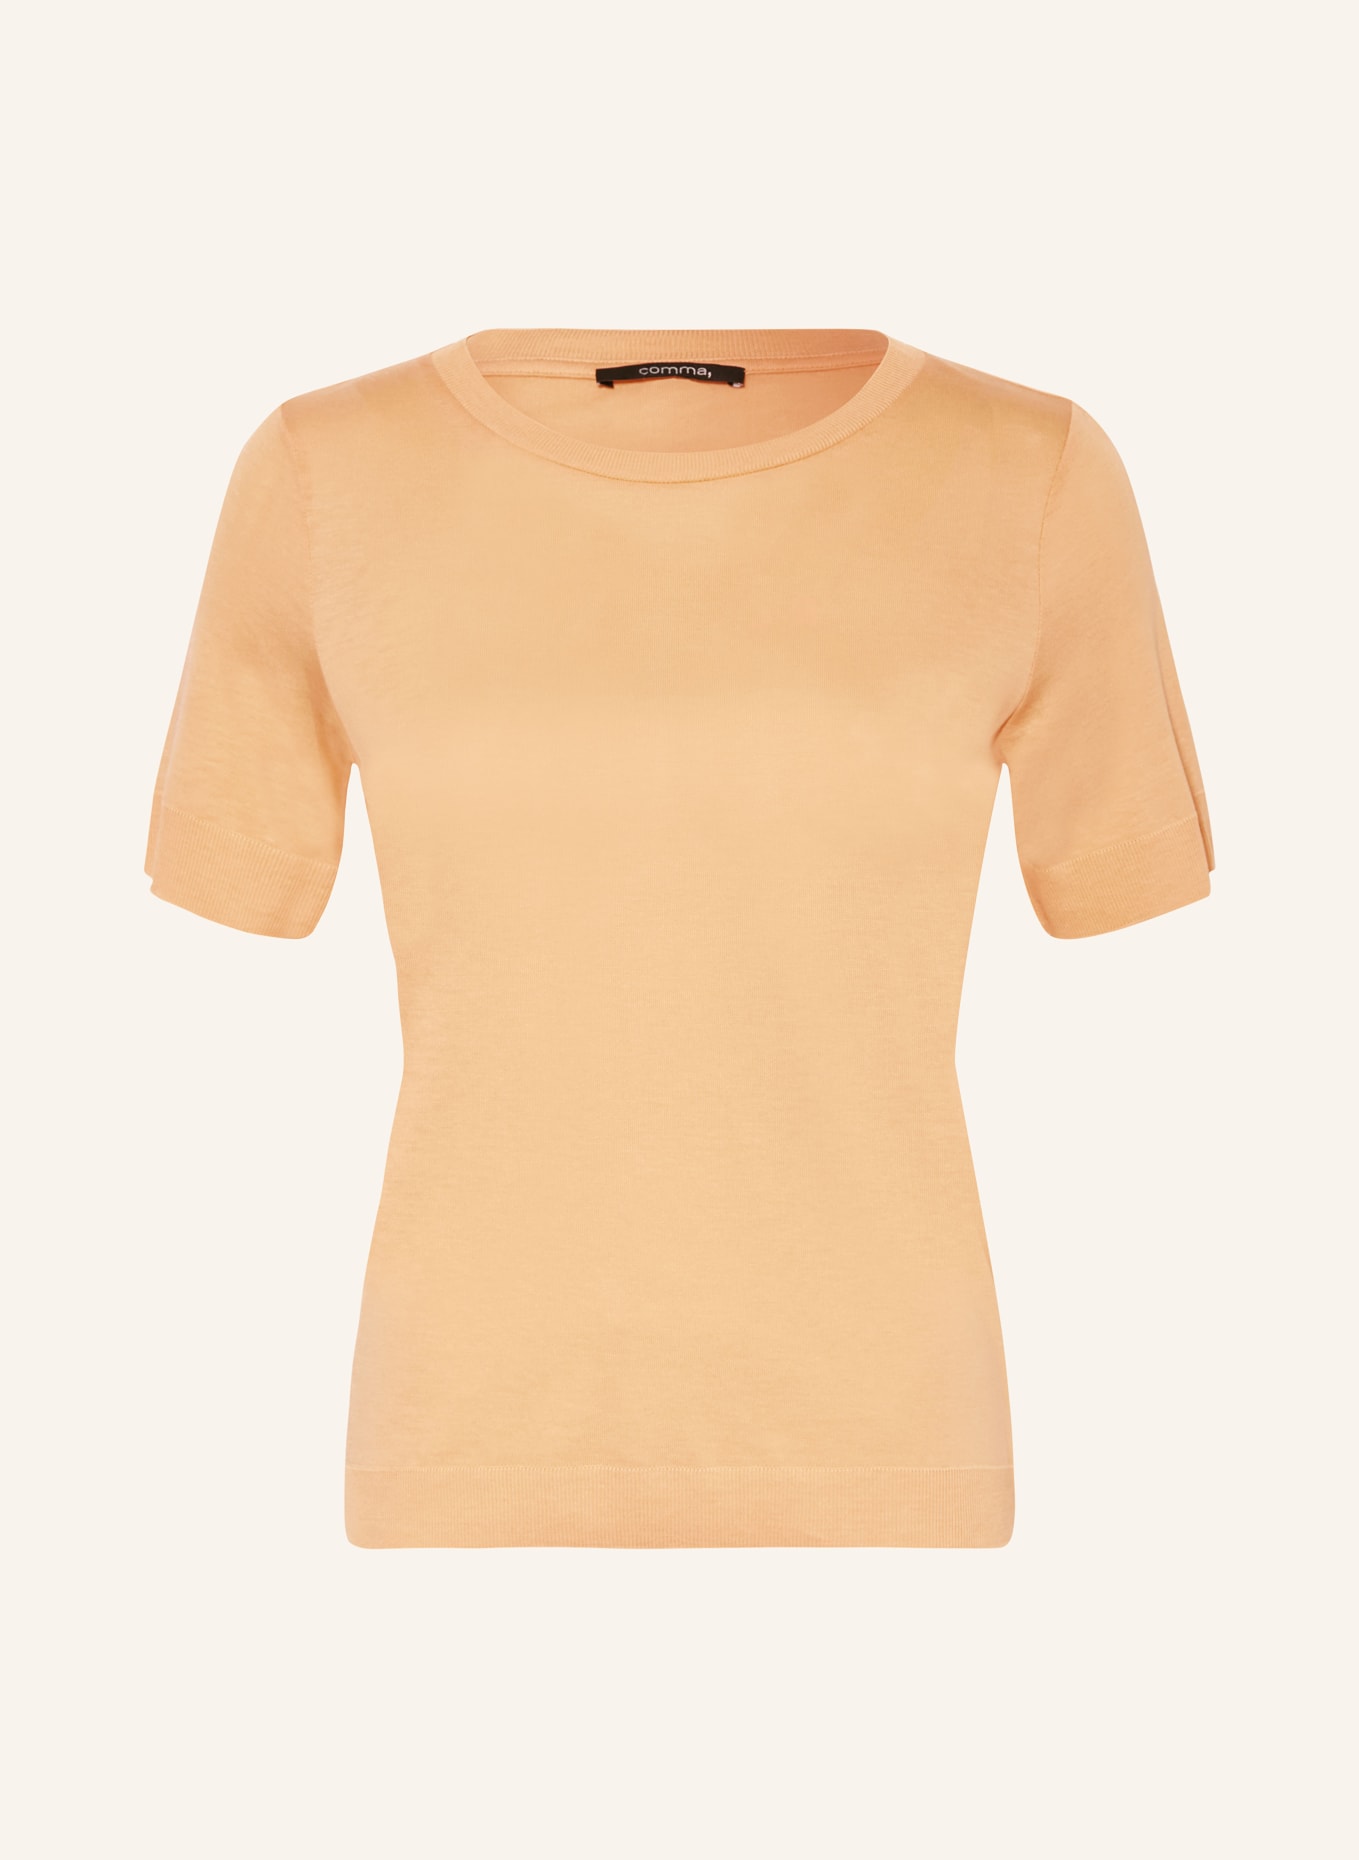 comma Knit shirt, Color: ORANGE (Image 1)